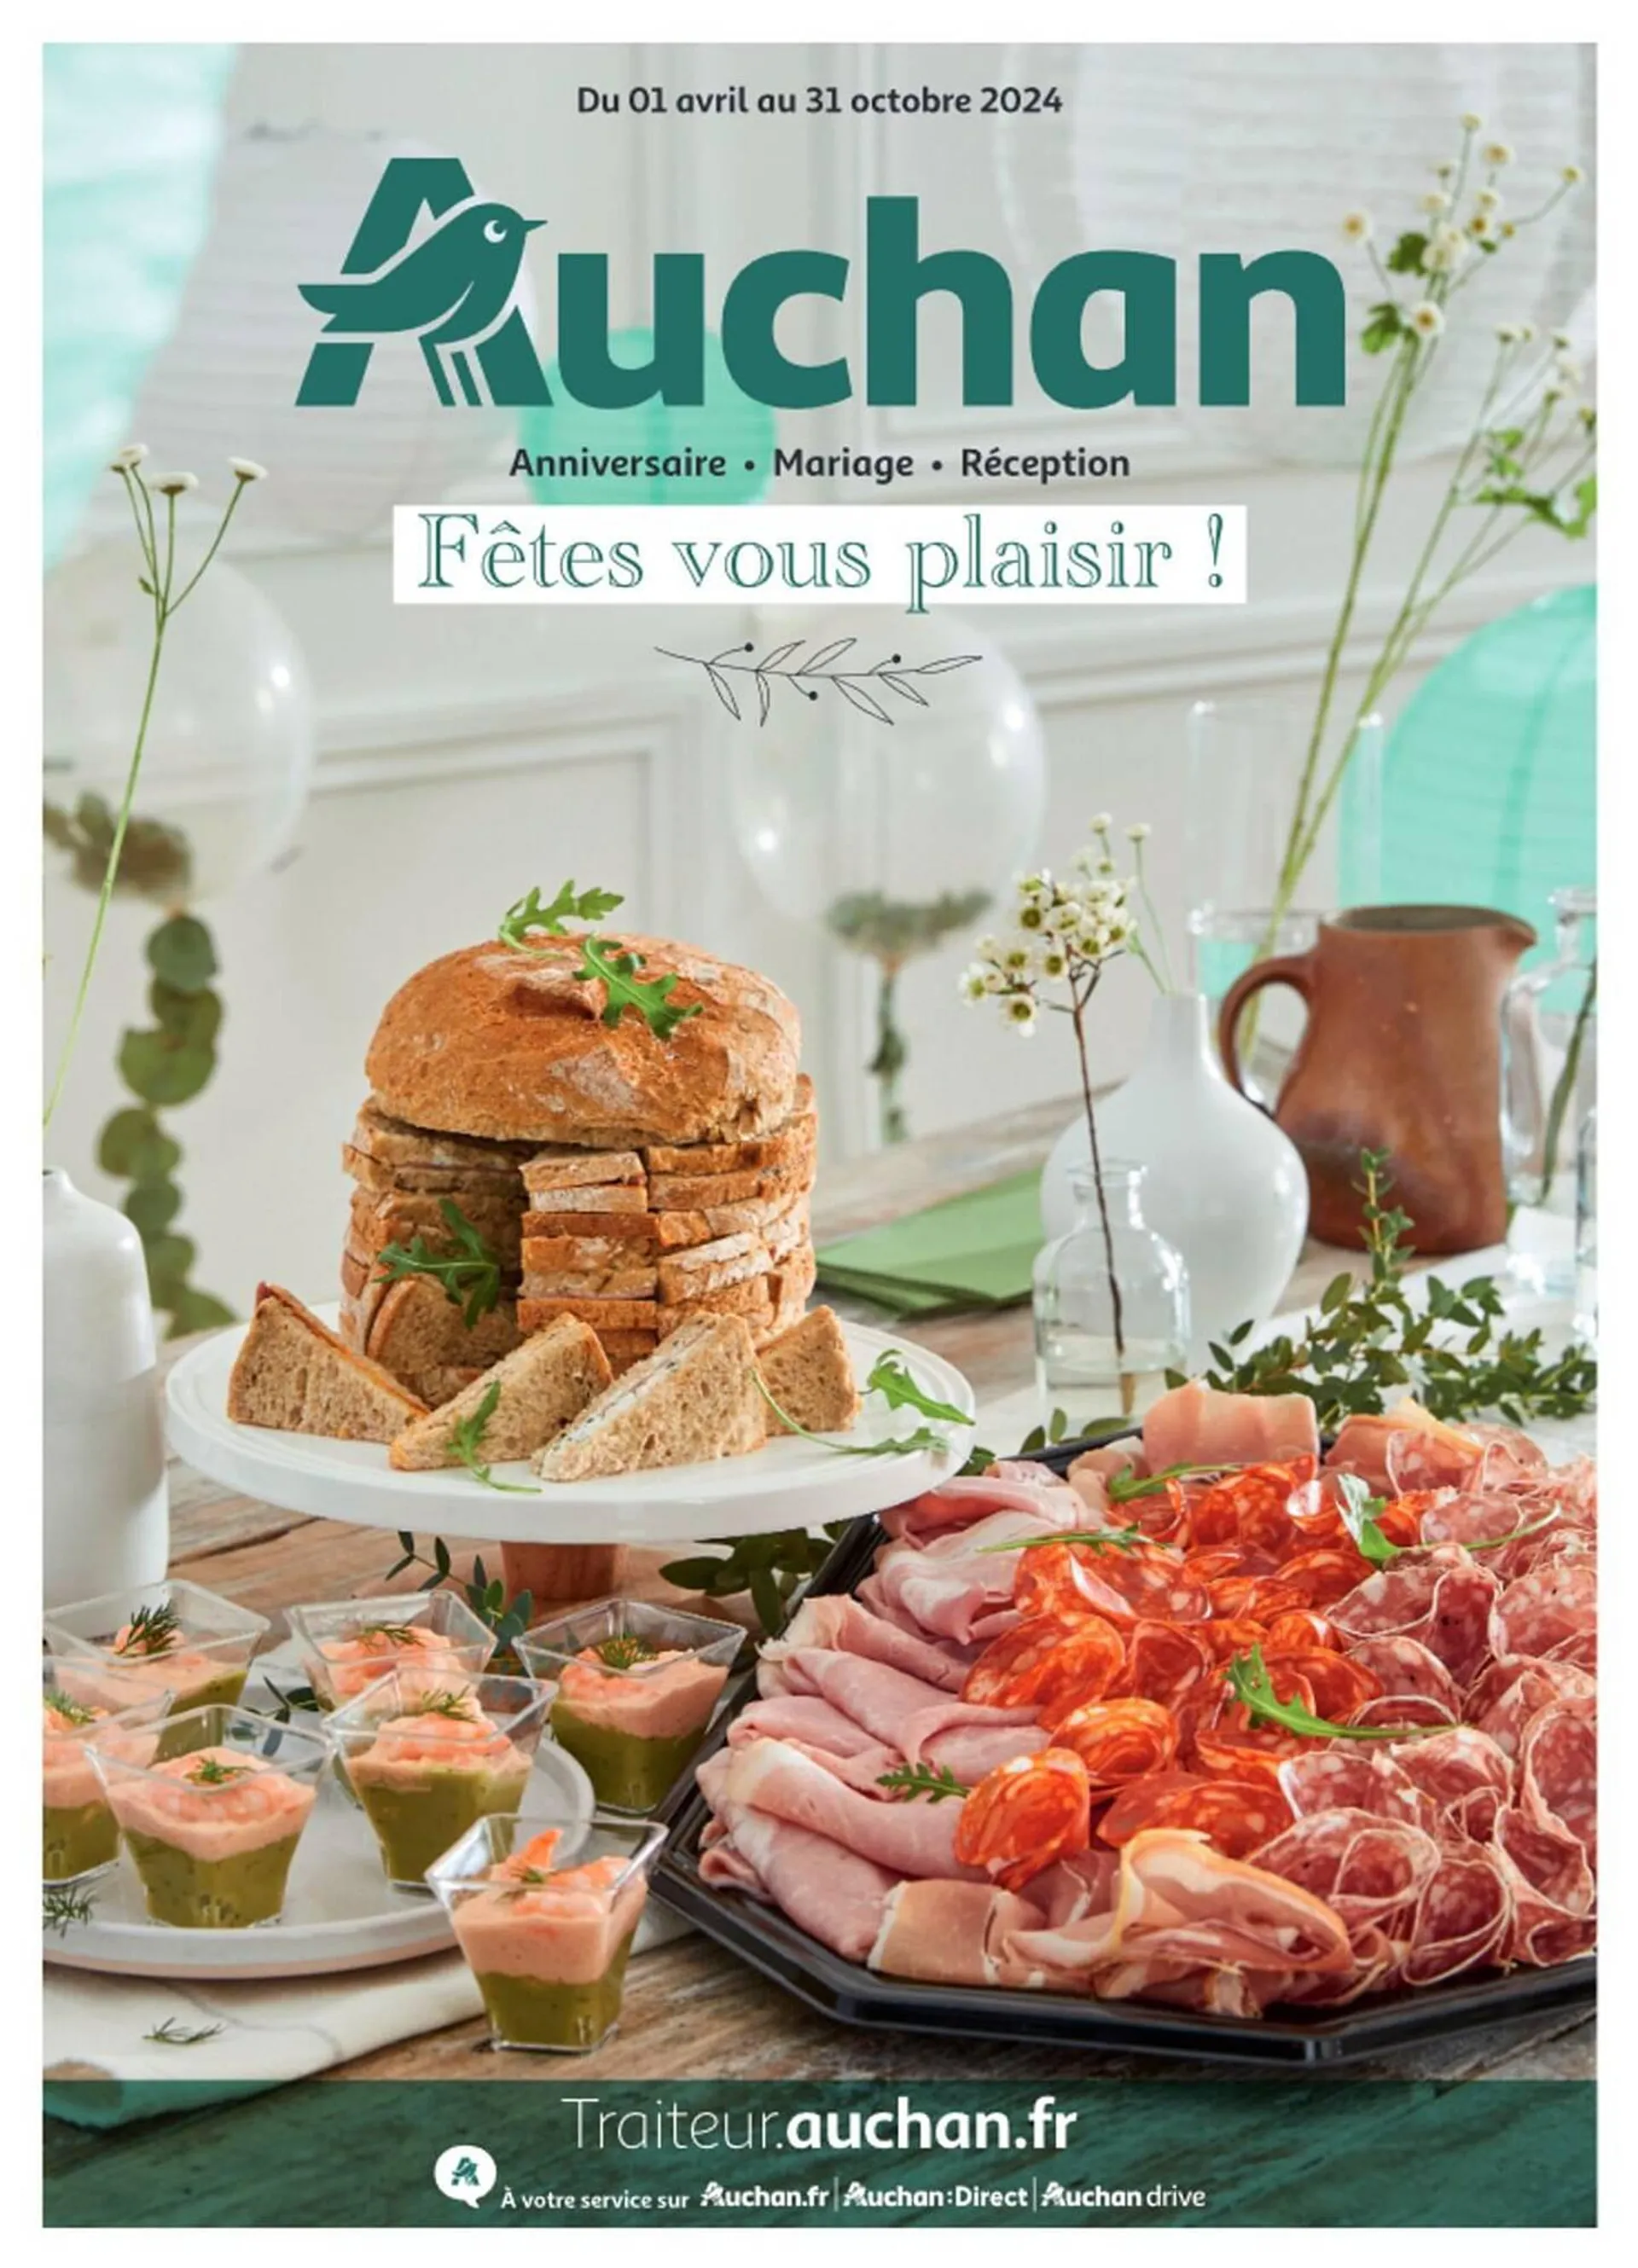 Catalogue Auchan du 1 avril au 1 novembre 2024 - Catalogue page 